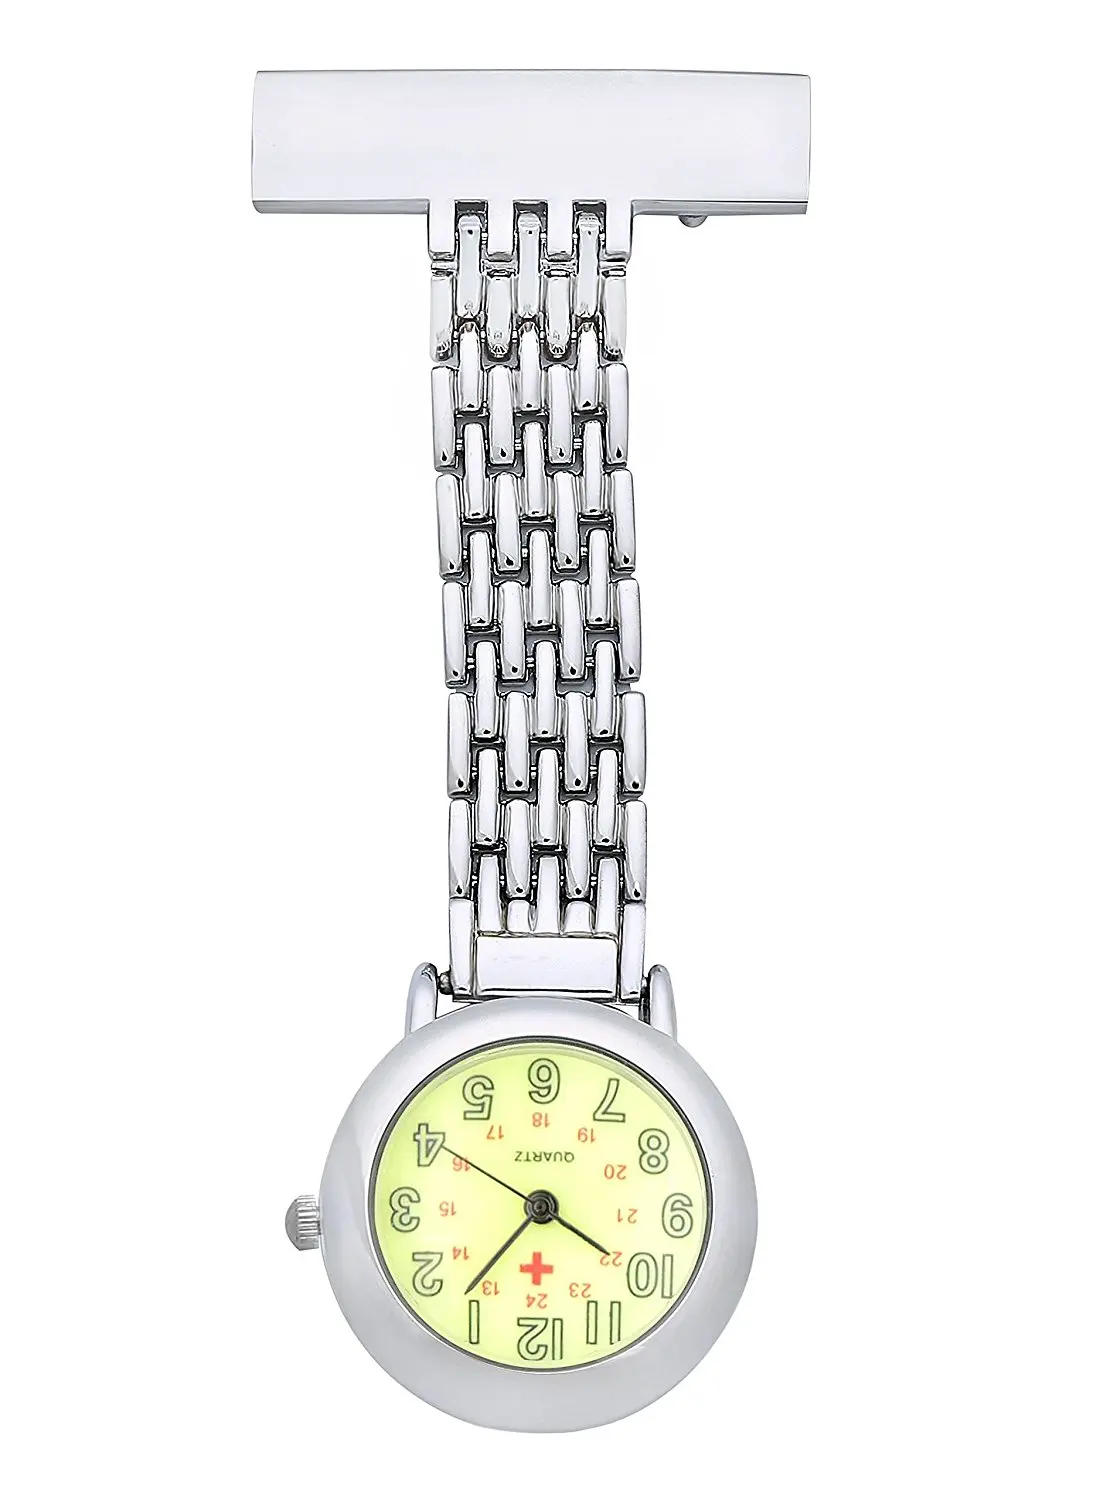 WEI PENG медсестры с отворотом Pin часы 24hr Военный Время аналоговый контроль инфекции часы зеленый циферблат Reloj De Bolsillo